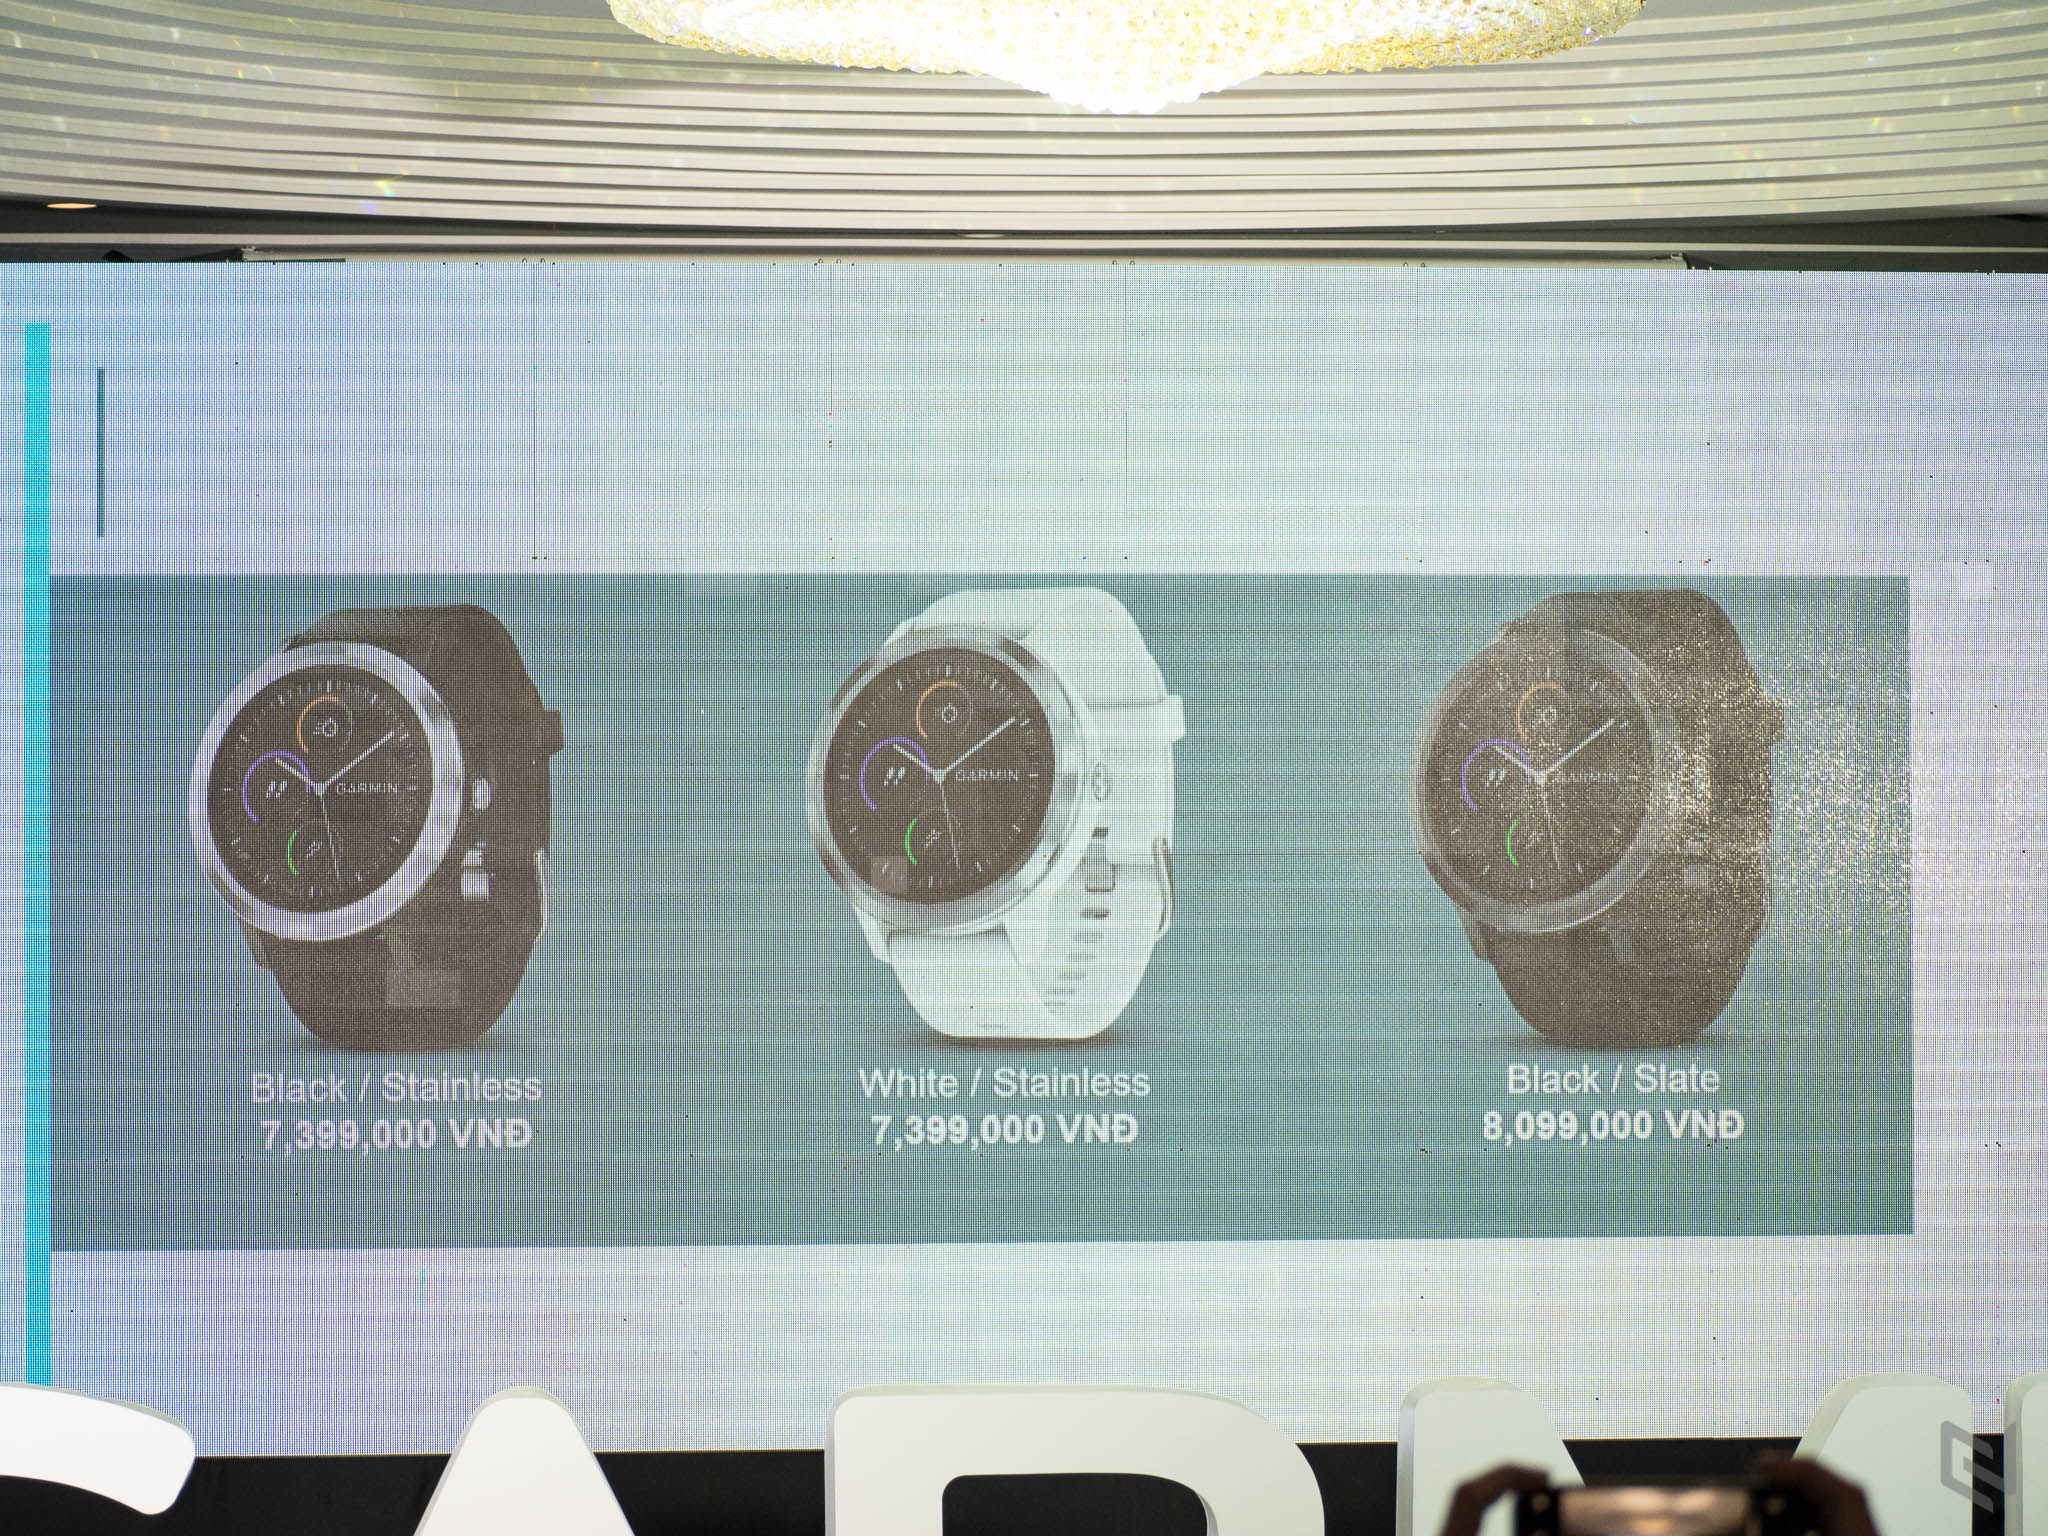 Garmin ra mắt hai đồng hồ thông minh Vivomove HR và Vivoactive 3 tại Việt Nam